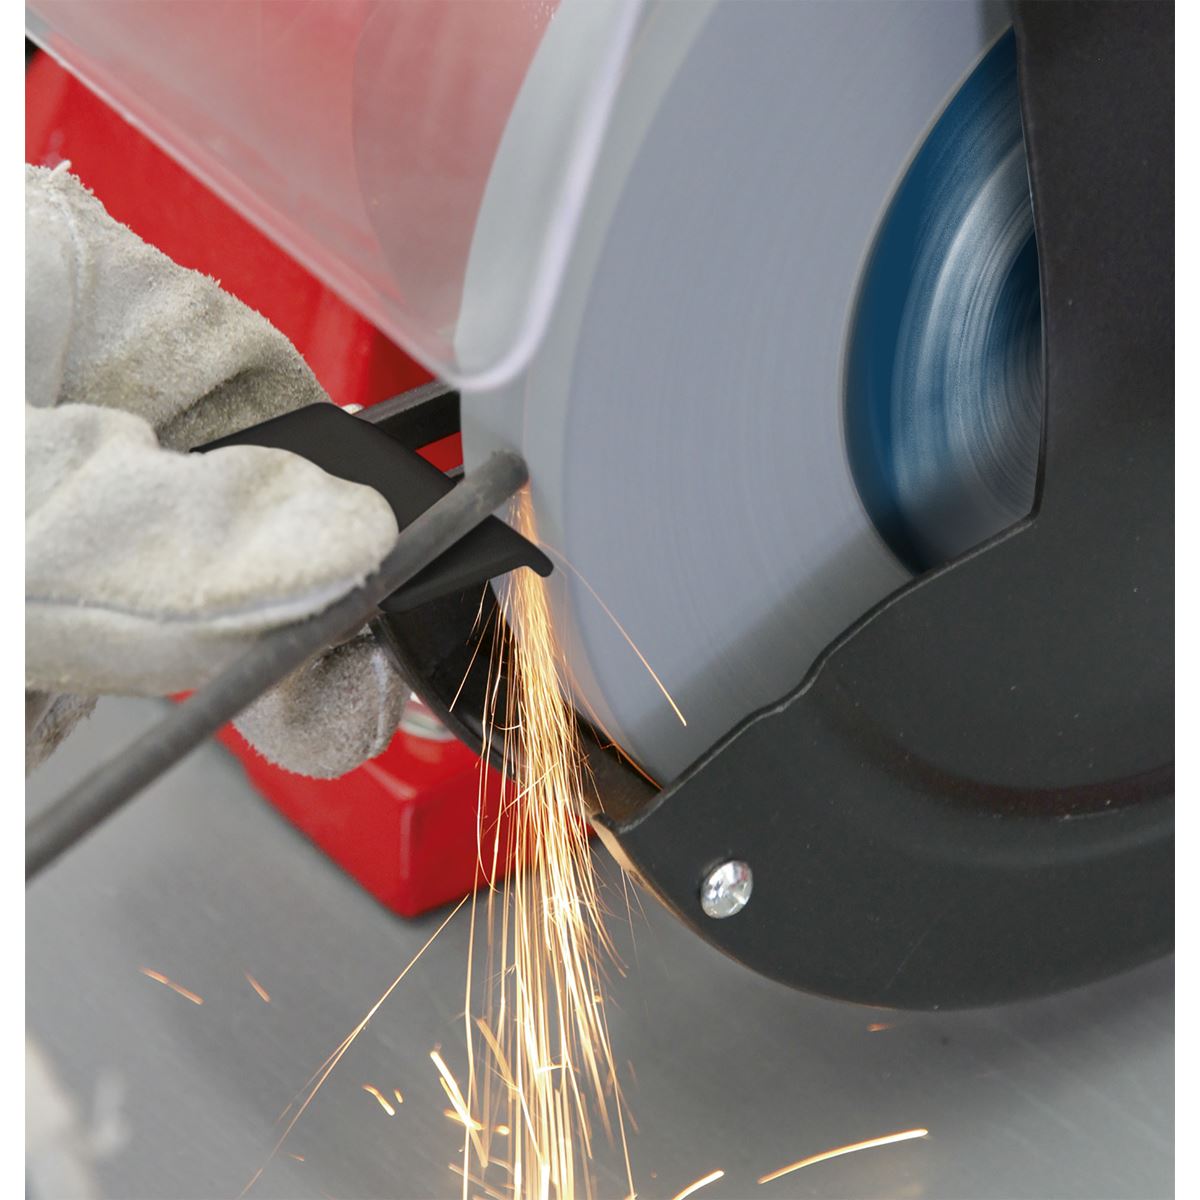 Sealey Bench Grinder 200mm Workshop Sharpening Grinding Coarse Fine 230V 600W